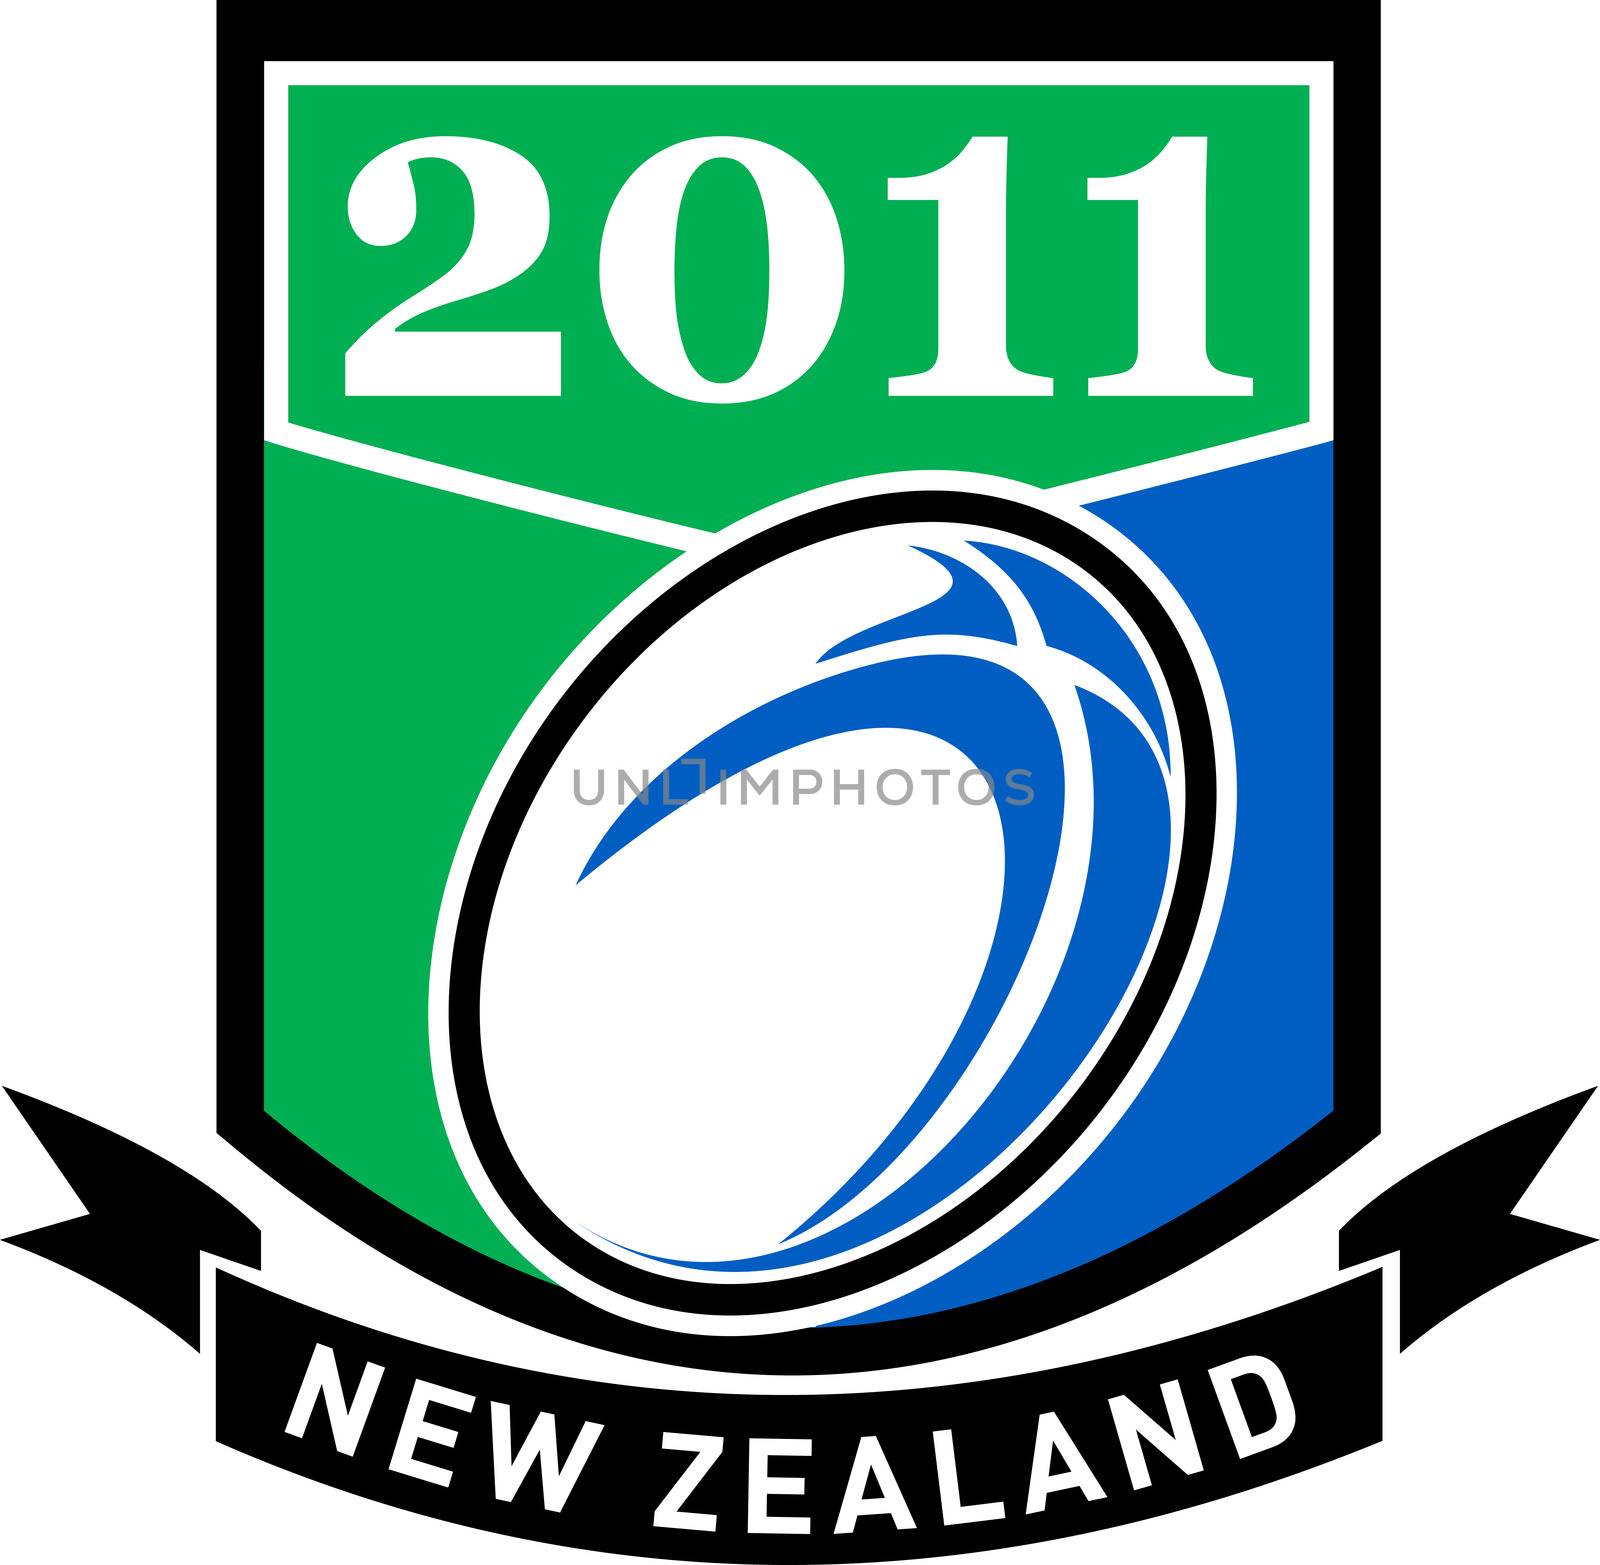 new zealand rugby 2011 shield by patrimonio